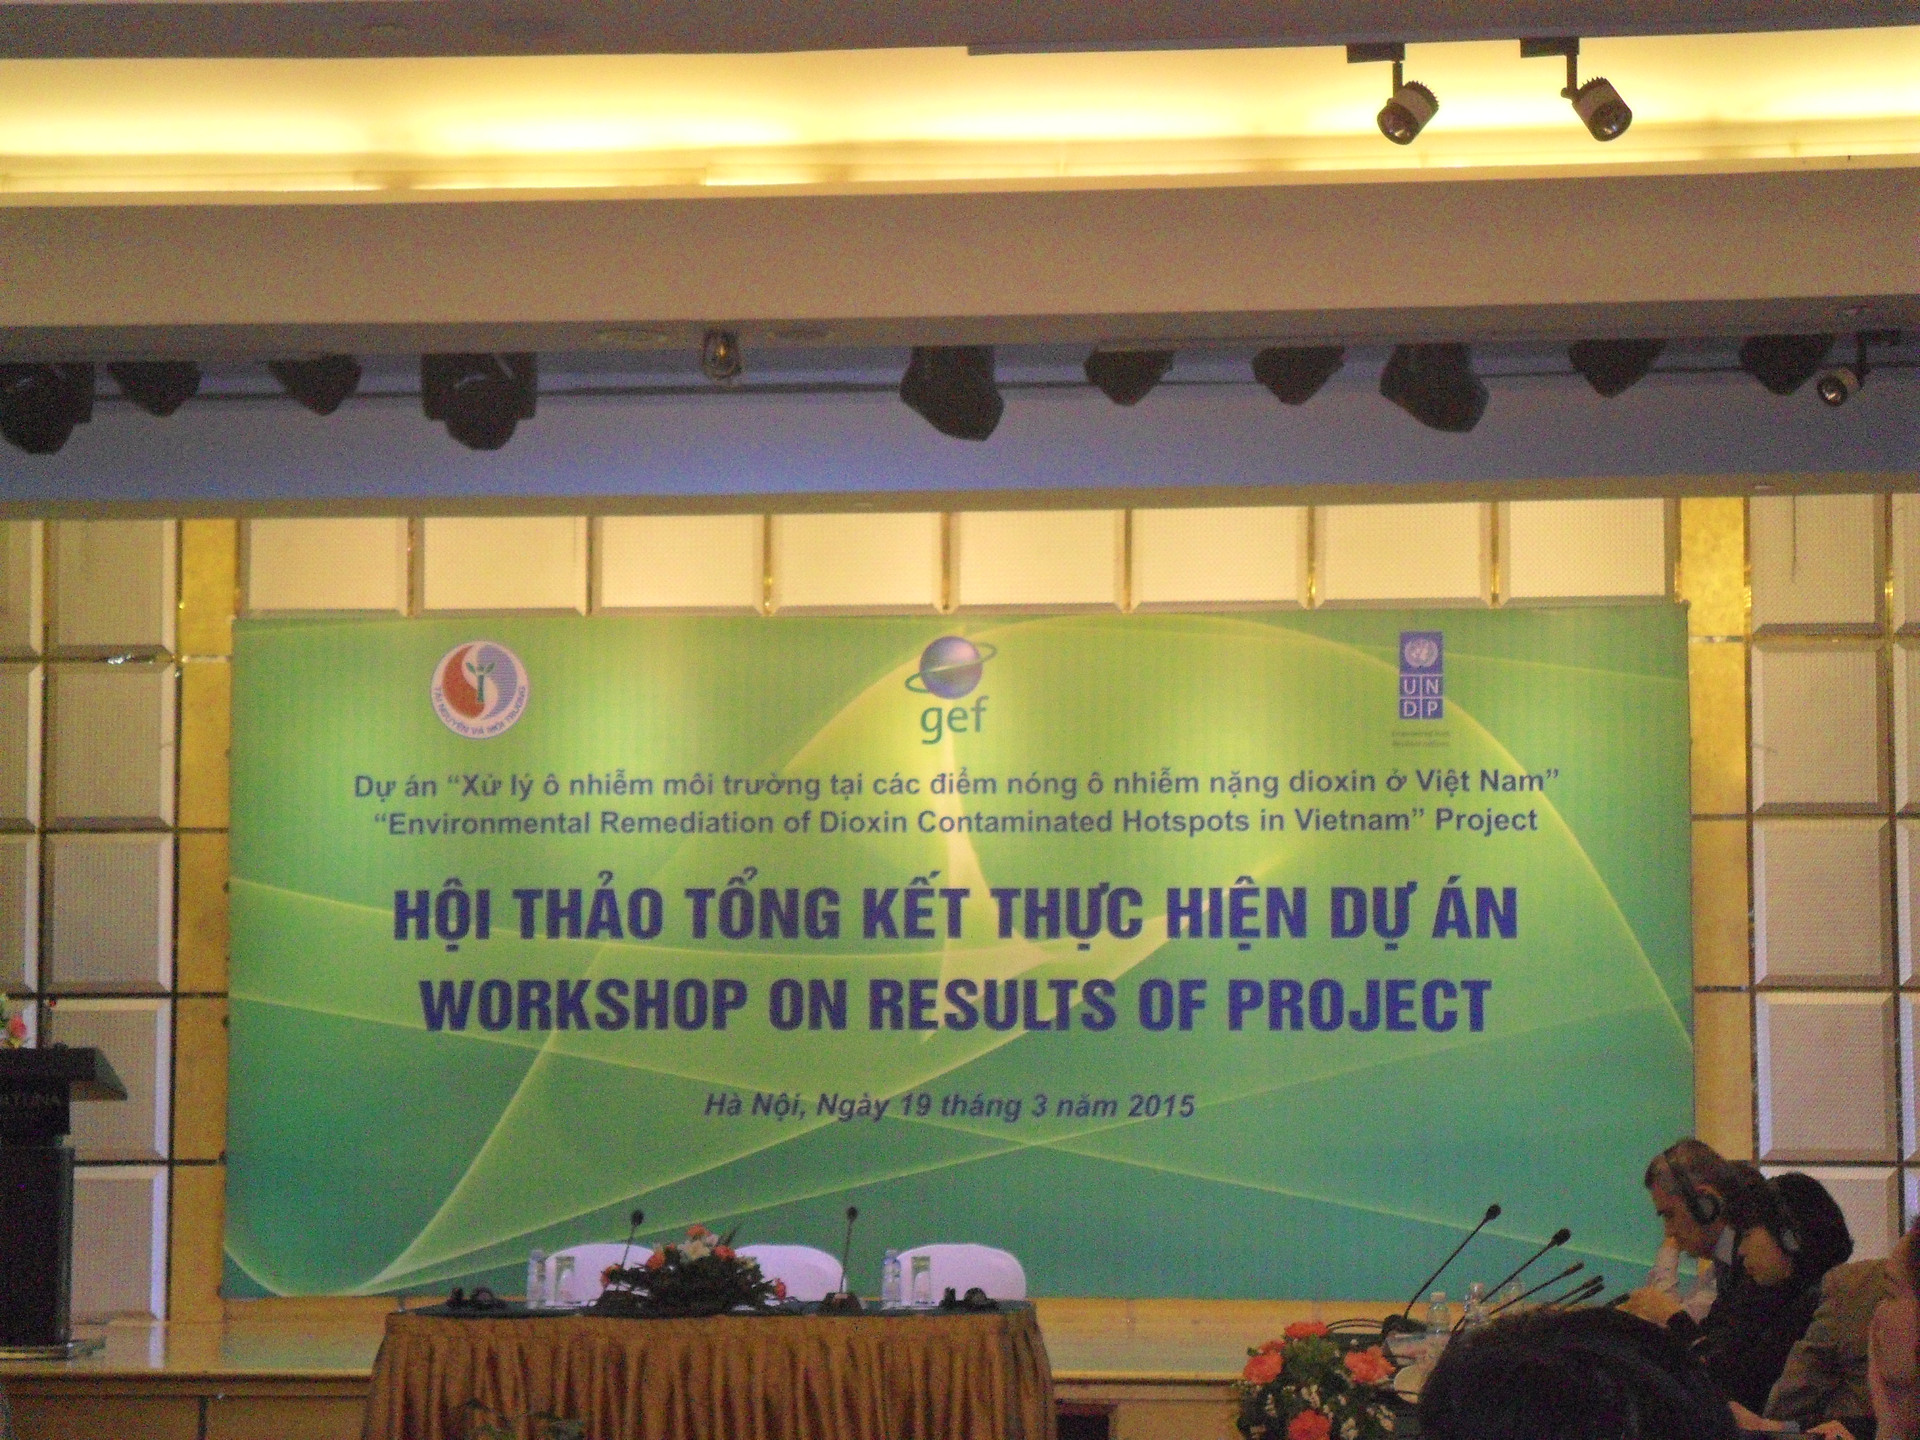 Xử lý chất độc da cam/dioxin tại Việt Nam còn phức tạp và lâu dài